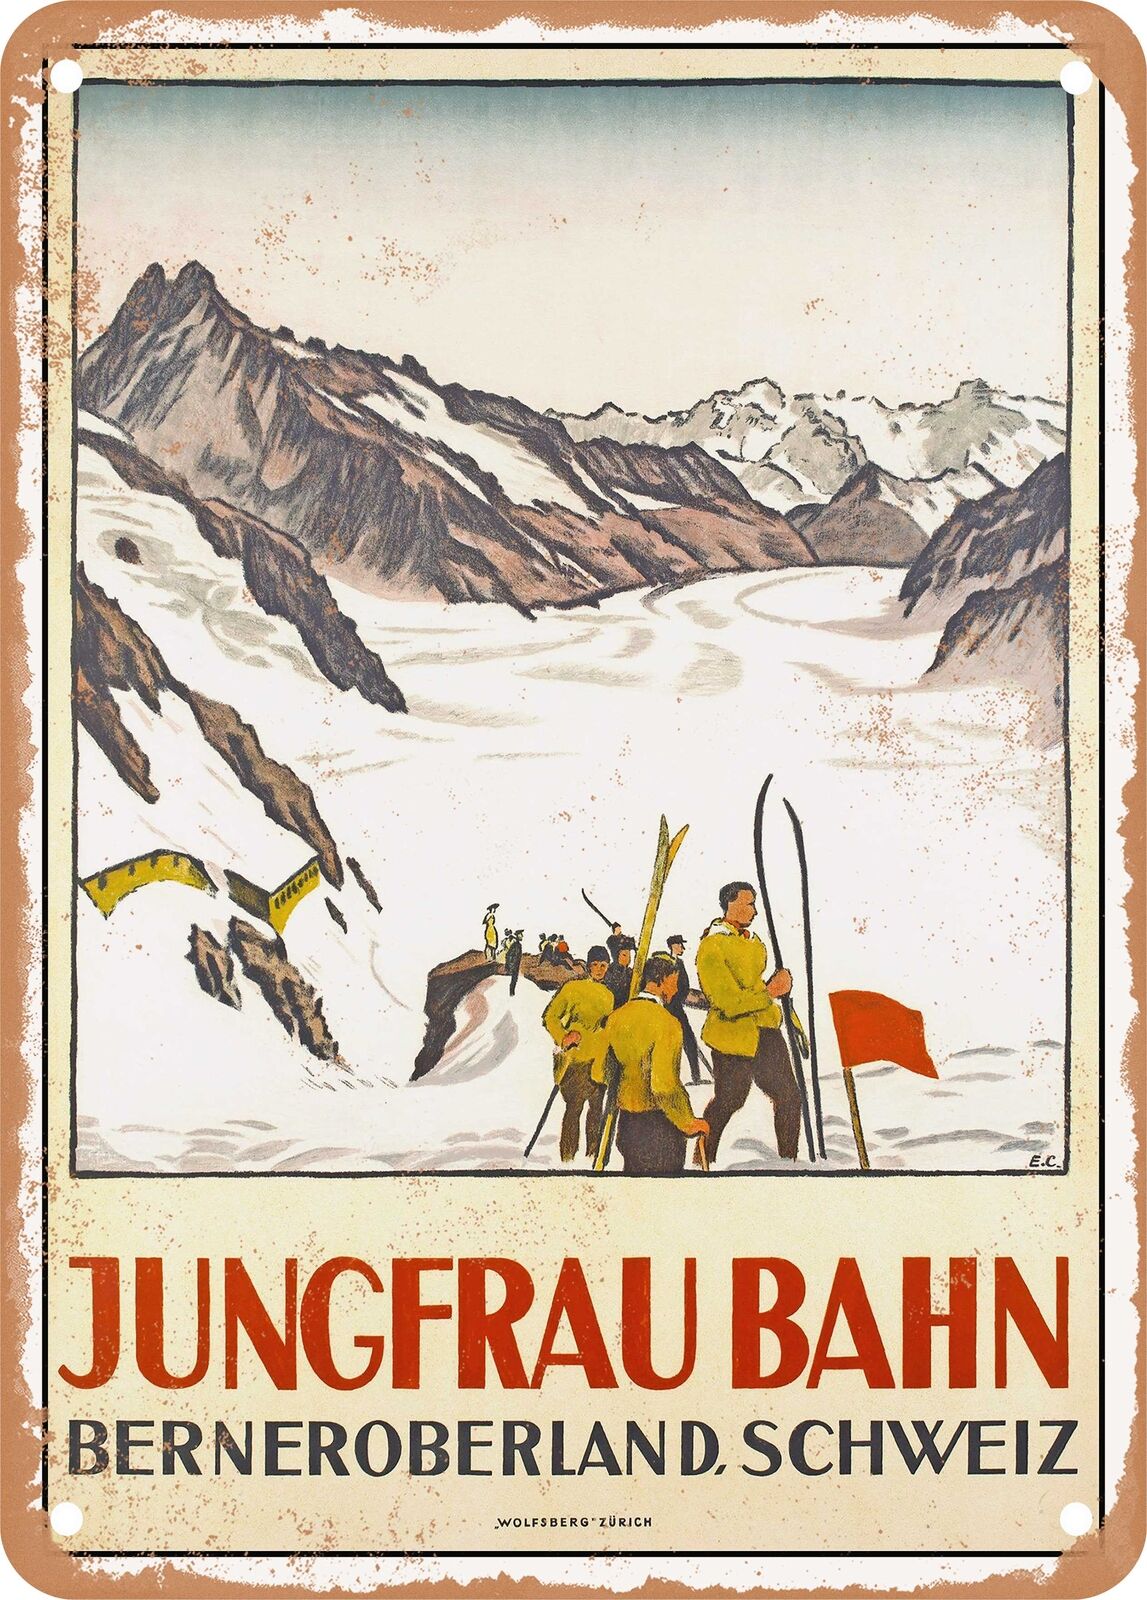 METAL SIGN - 1924 Jungfrau Railway Bernese Oberland, Switzerland Vintage Ad